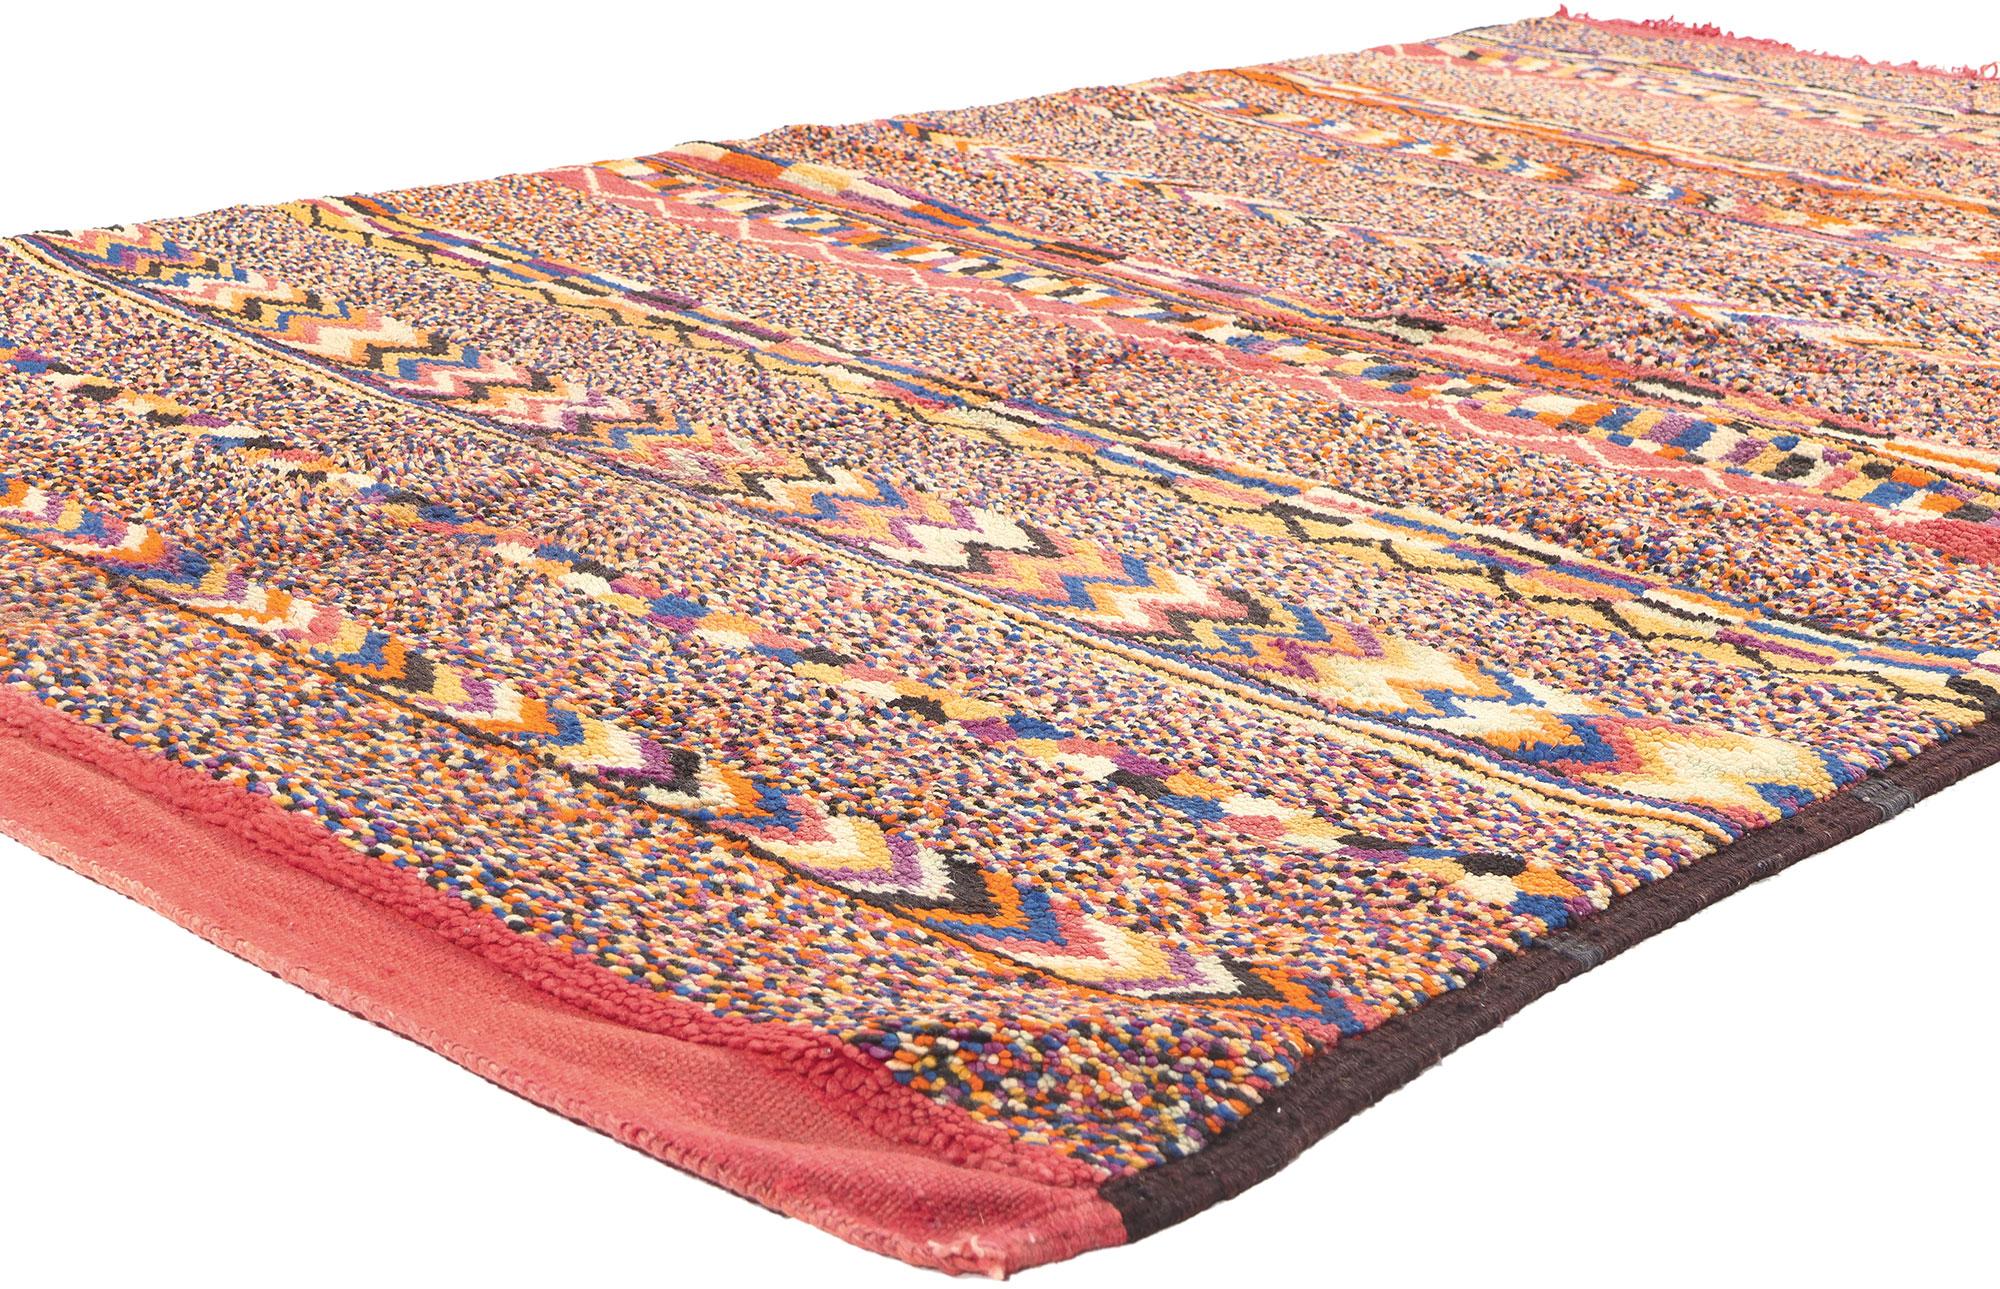 20368 Tapis marocain Vintage Beni Mrirt, 05'03 x 08'07. 

Plongez dans l'allure captivante de ce tapis marocain vintage Beni Mrirt en laine nouée à la main, qui témoigne de l'héritage artistique des tribus berbères. Les formes géométriques, les